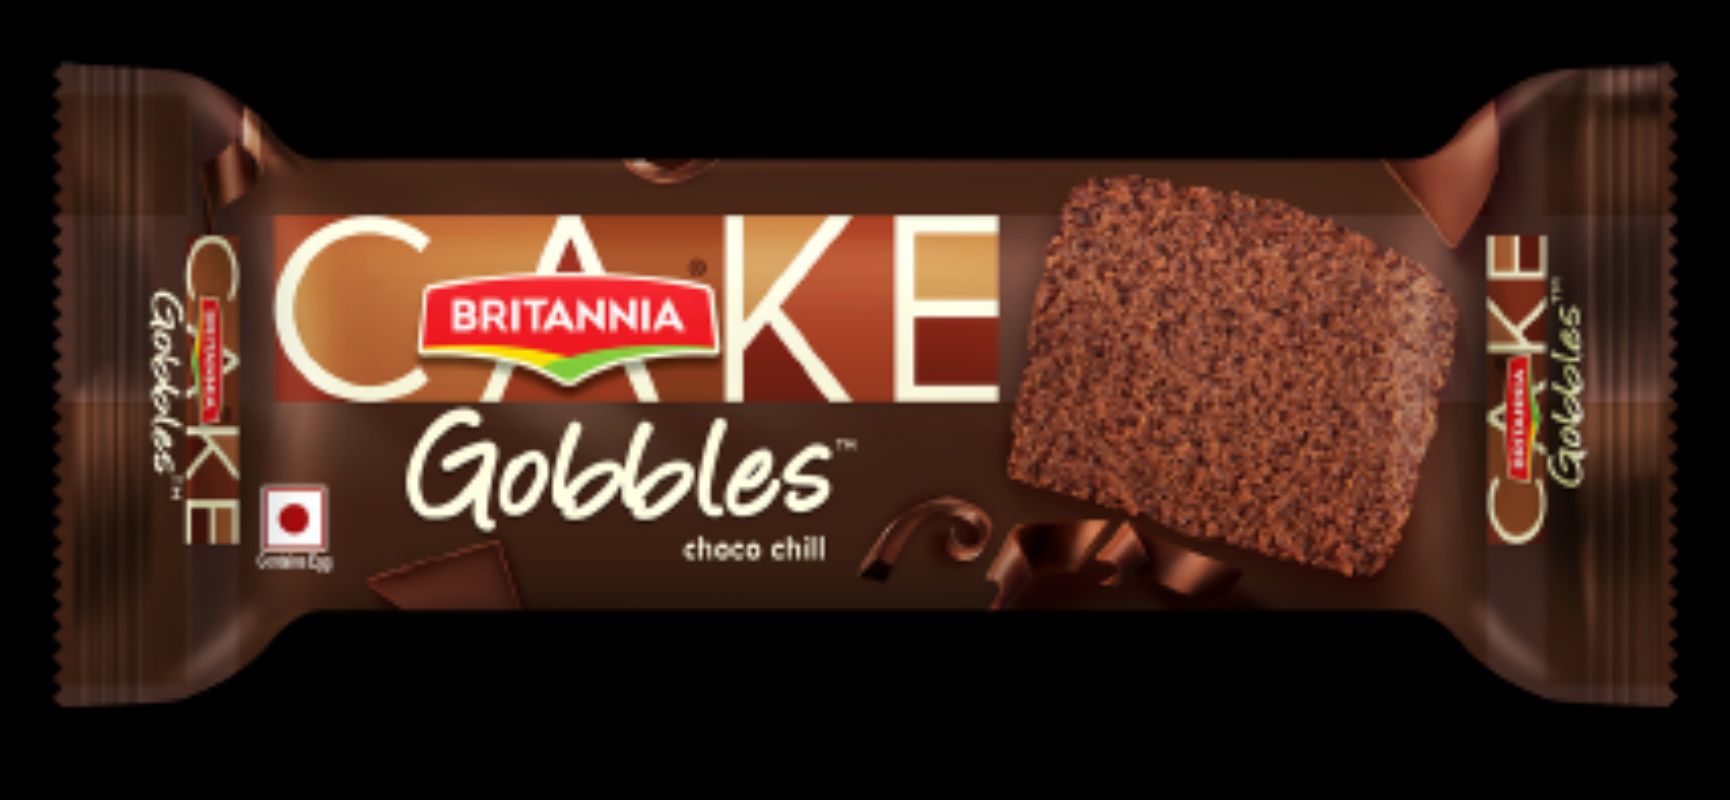 BRITANNIA Gobbles choco chill cake - YouTube